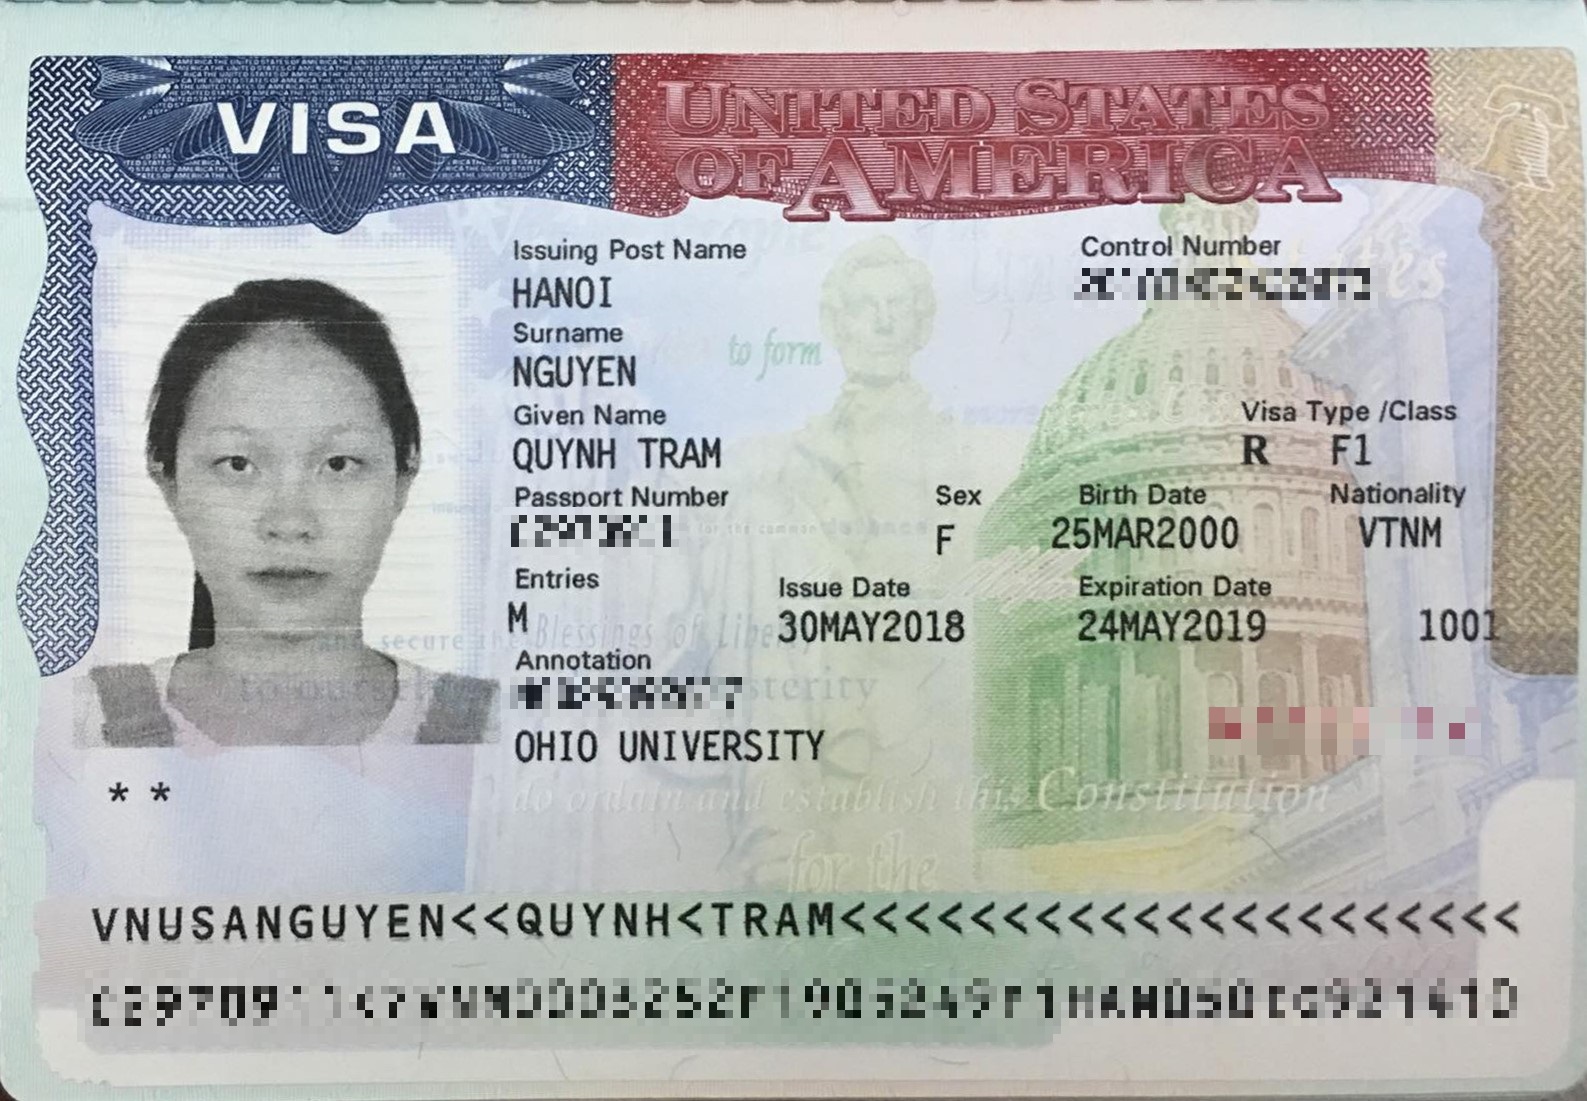 Chúc mừng bạn Nguyễn Quỳnh Trâm đã đậu visa du học Mỹ